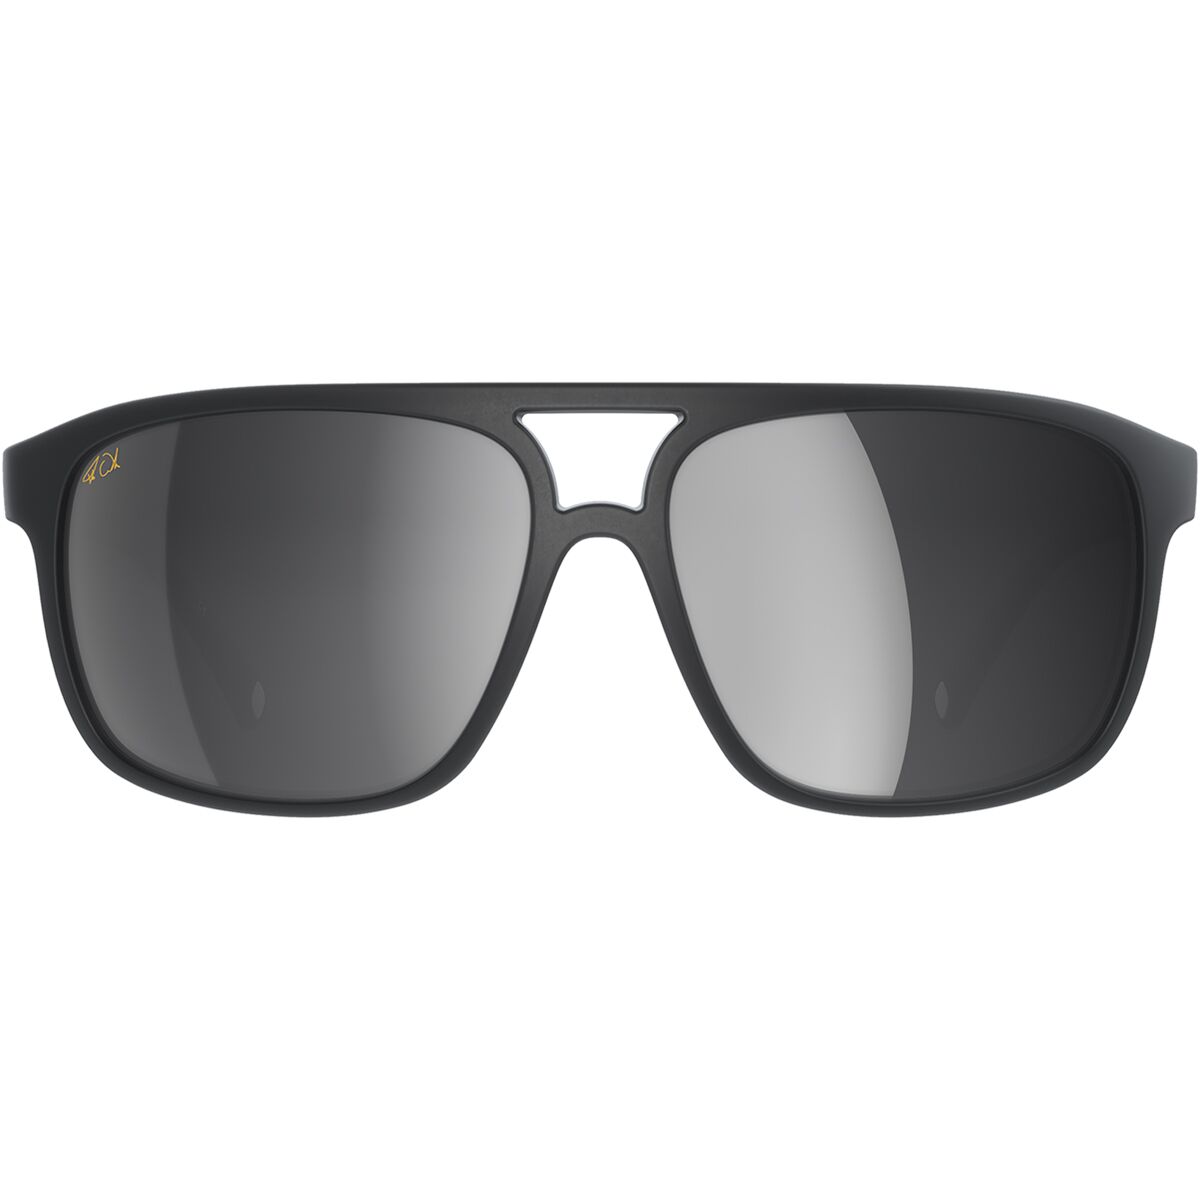 POC Will Fabio Edition Sunglasses - Men